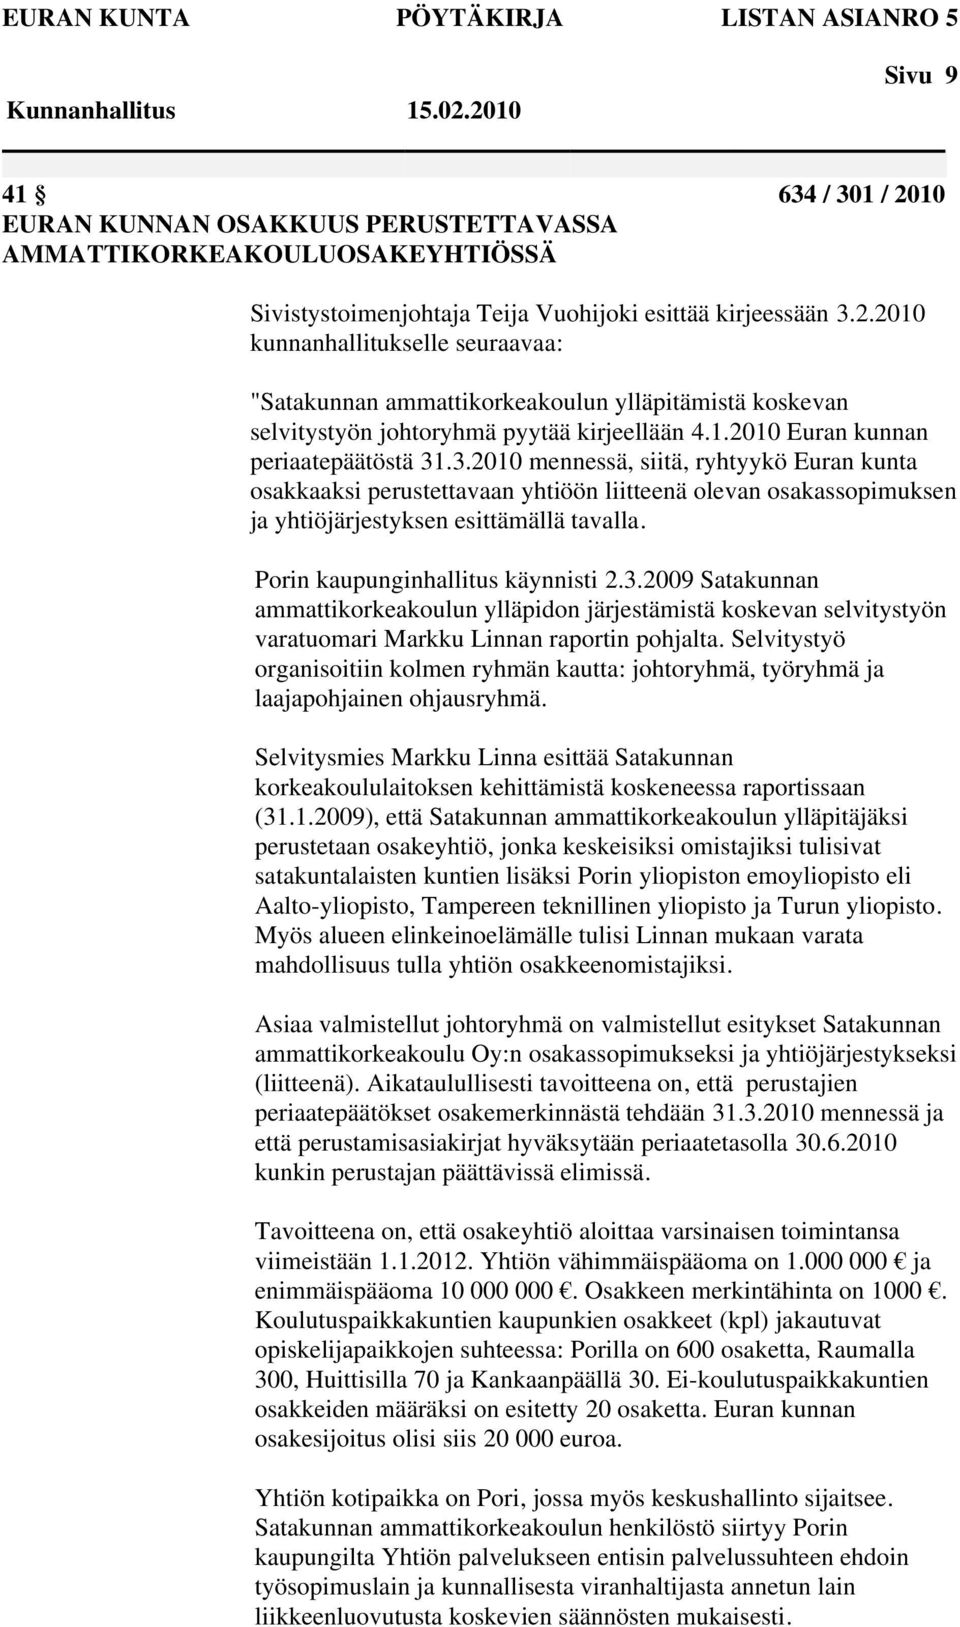 Porin kaupunginhallitus käynnisti 2.3.2009 Satakunnan ammattikorkeakoulun ylläpidon järjestämistä koskevan selvitystyön varatuomari Markku Linnan raportin pohjalta.